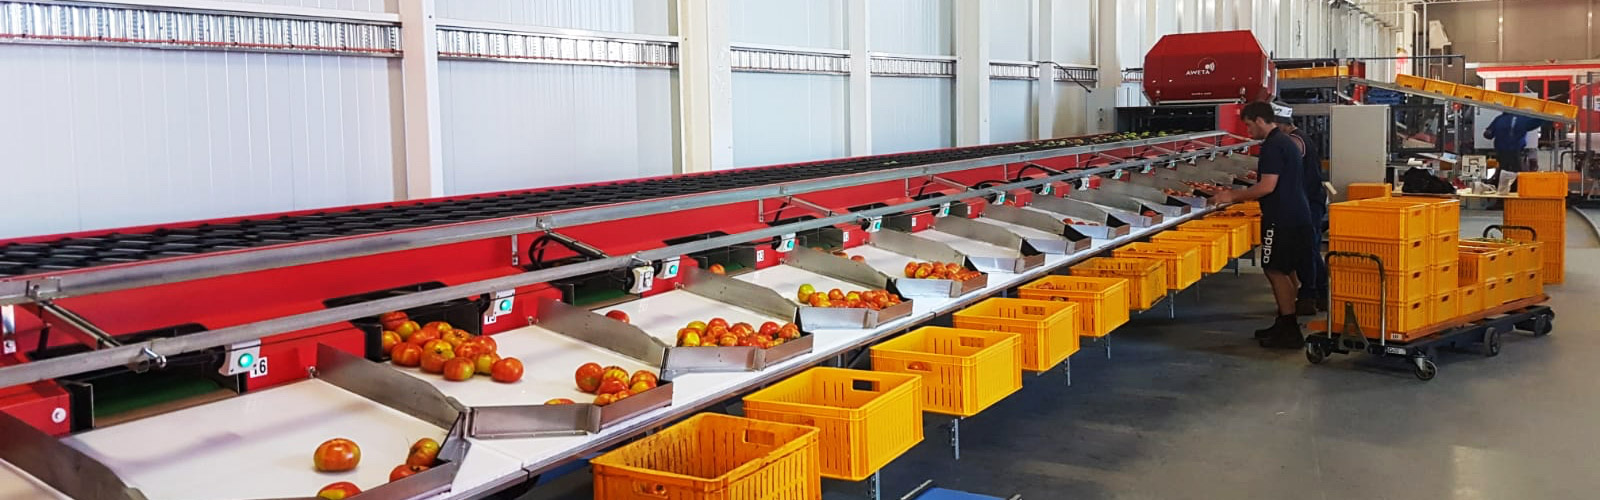 Tomaten sorteerlijn Australië | Steenks Service